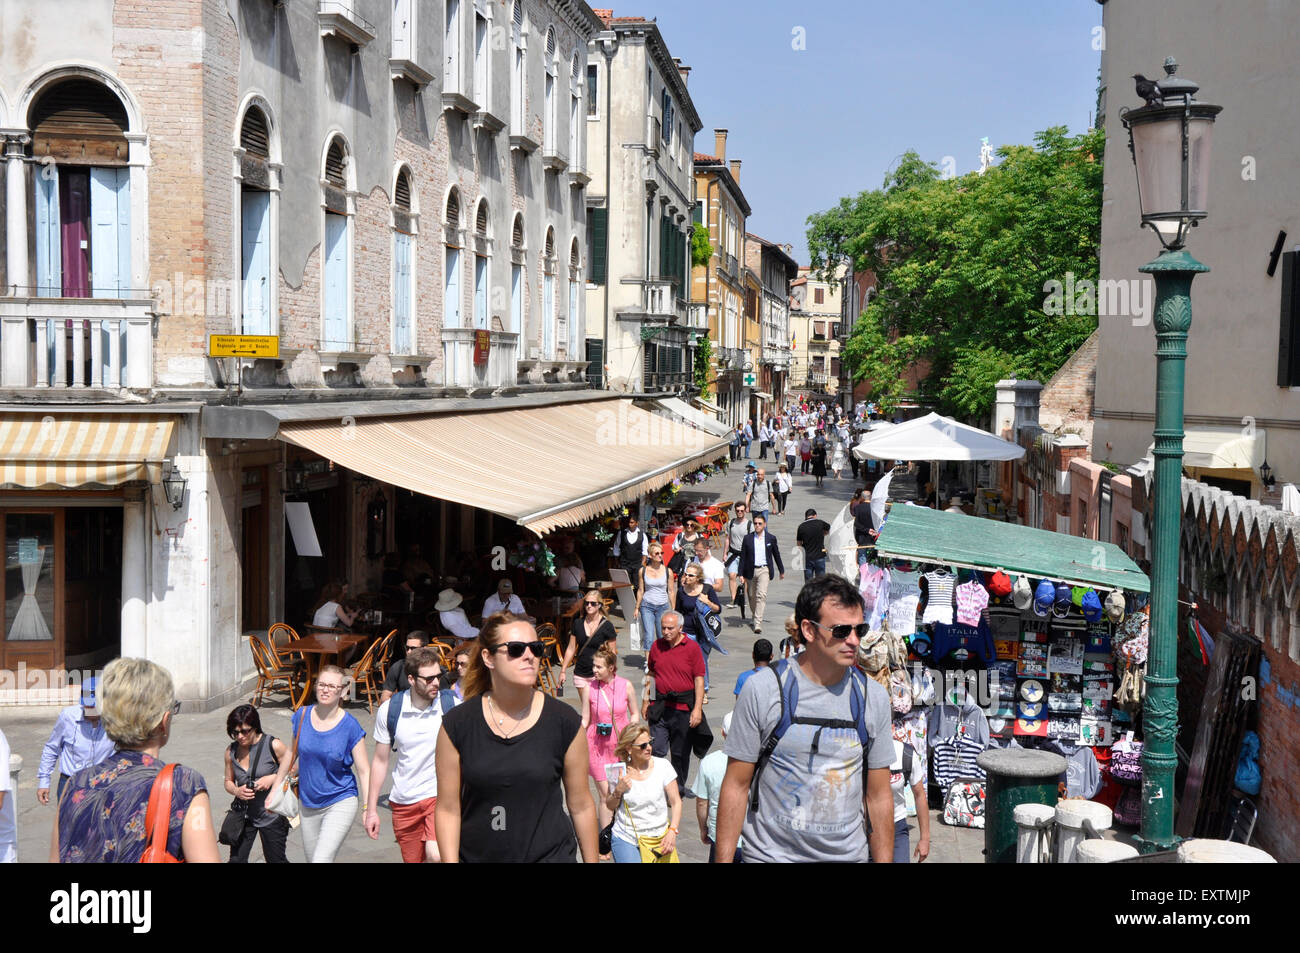 Italien Marktstände - Venedig - Cannaregio Region - beschäftigt Szene auf der Strada Nova - die Haupteinkaufsstraße - Shopper Sonnenschein Stockfoto